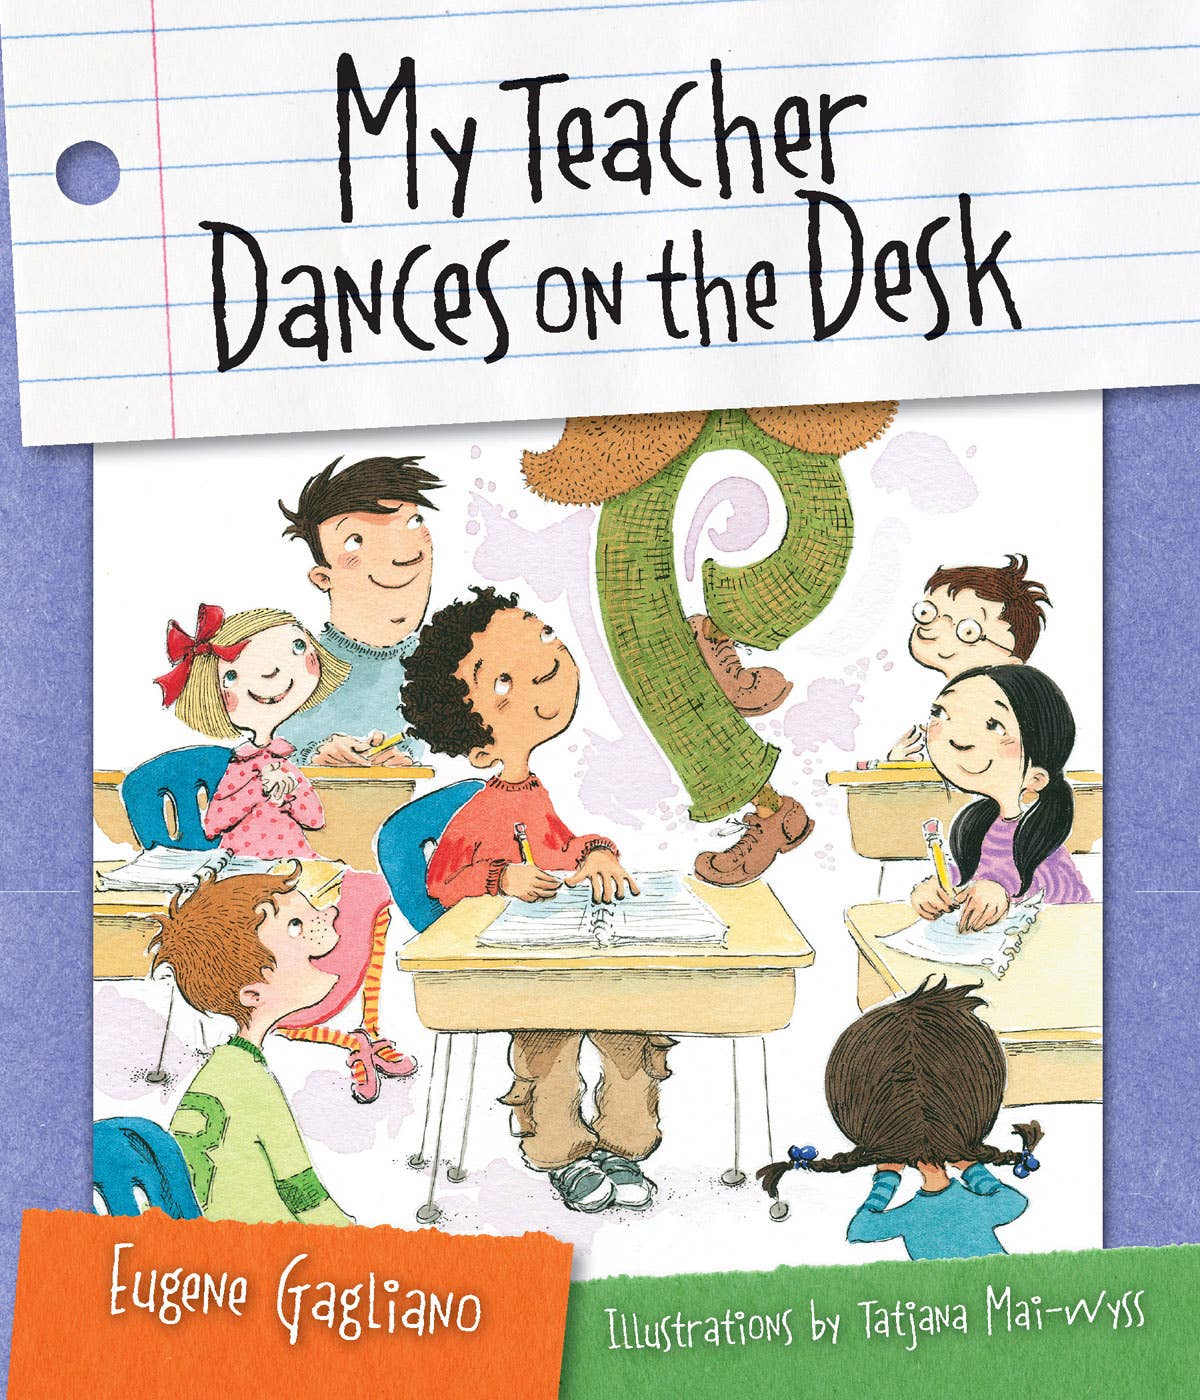 My Teacher Dances on the Desk, poems for children